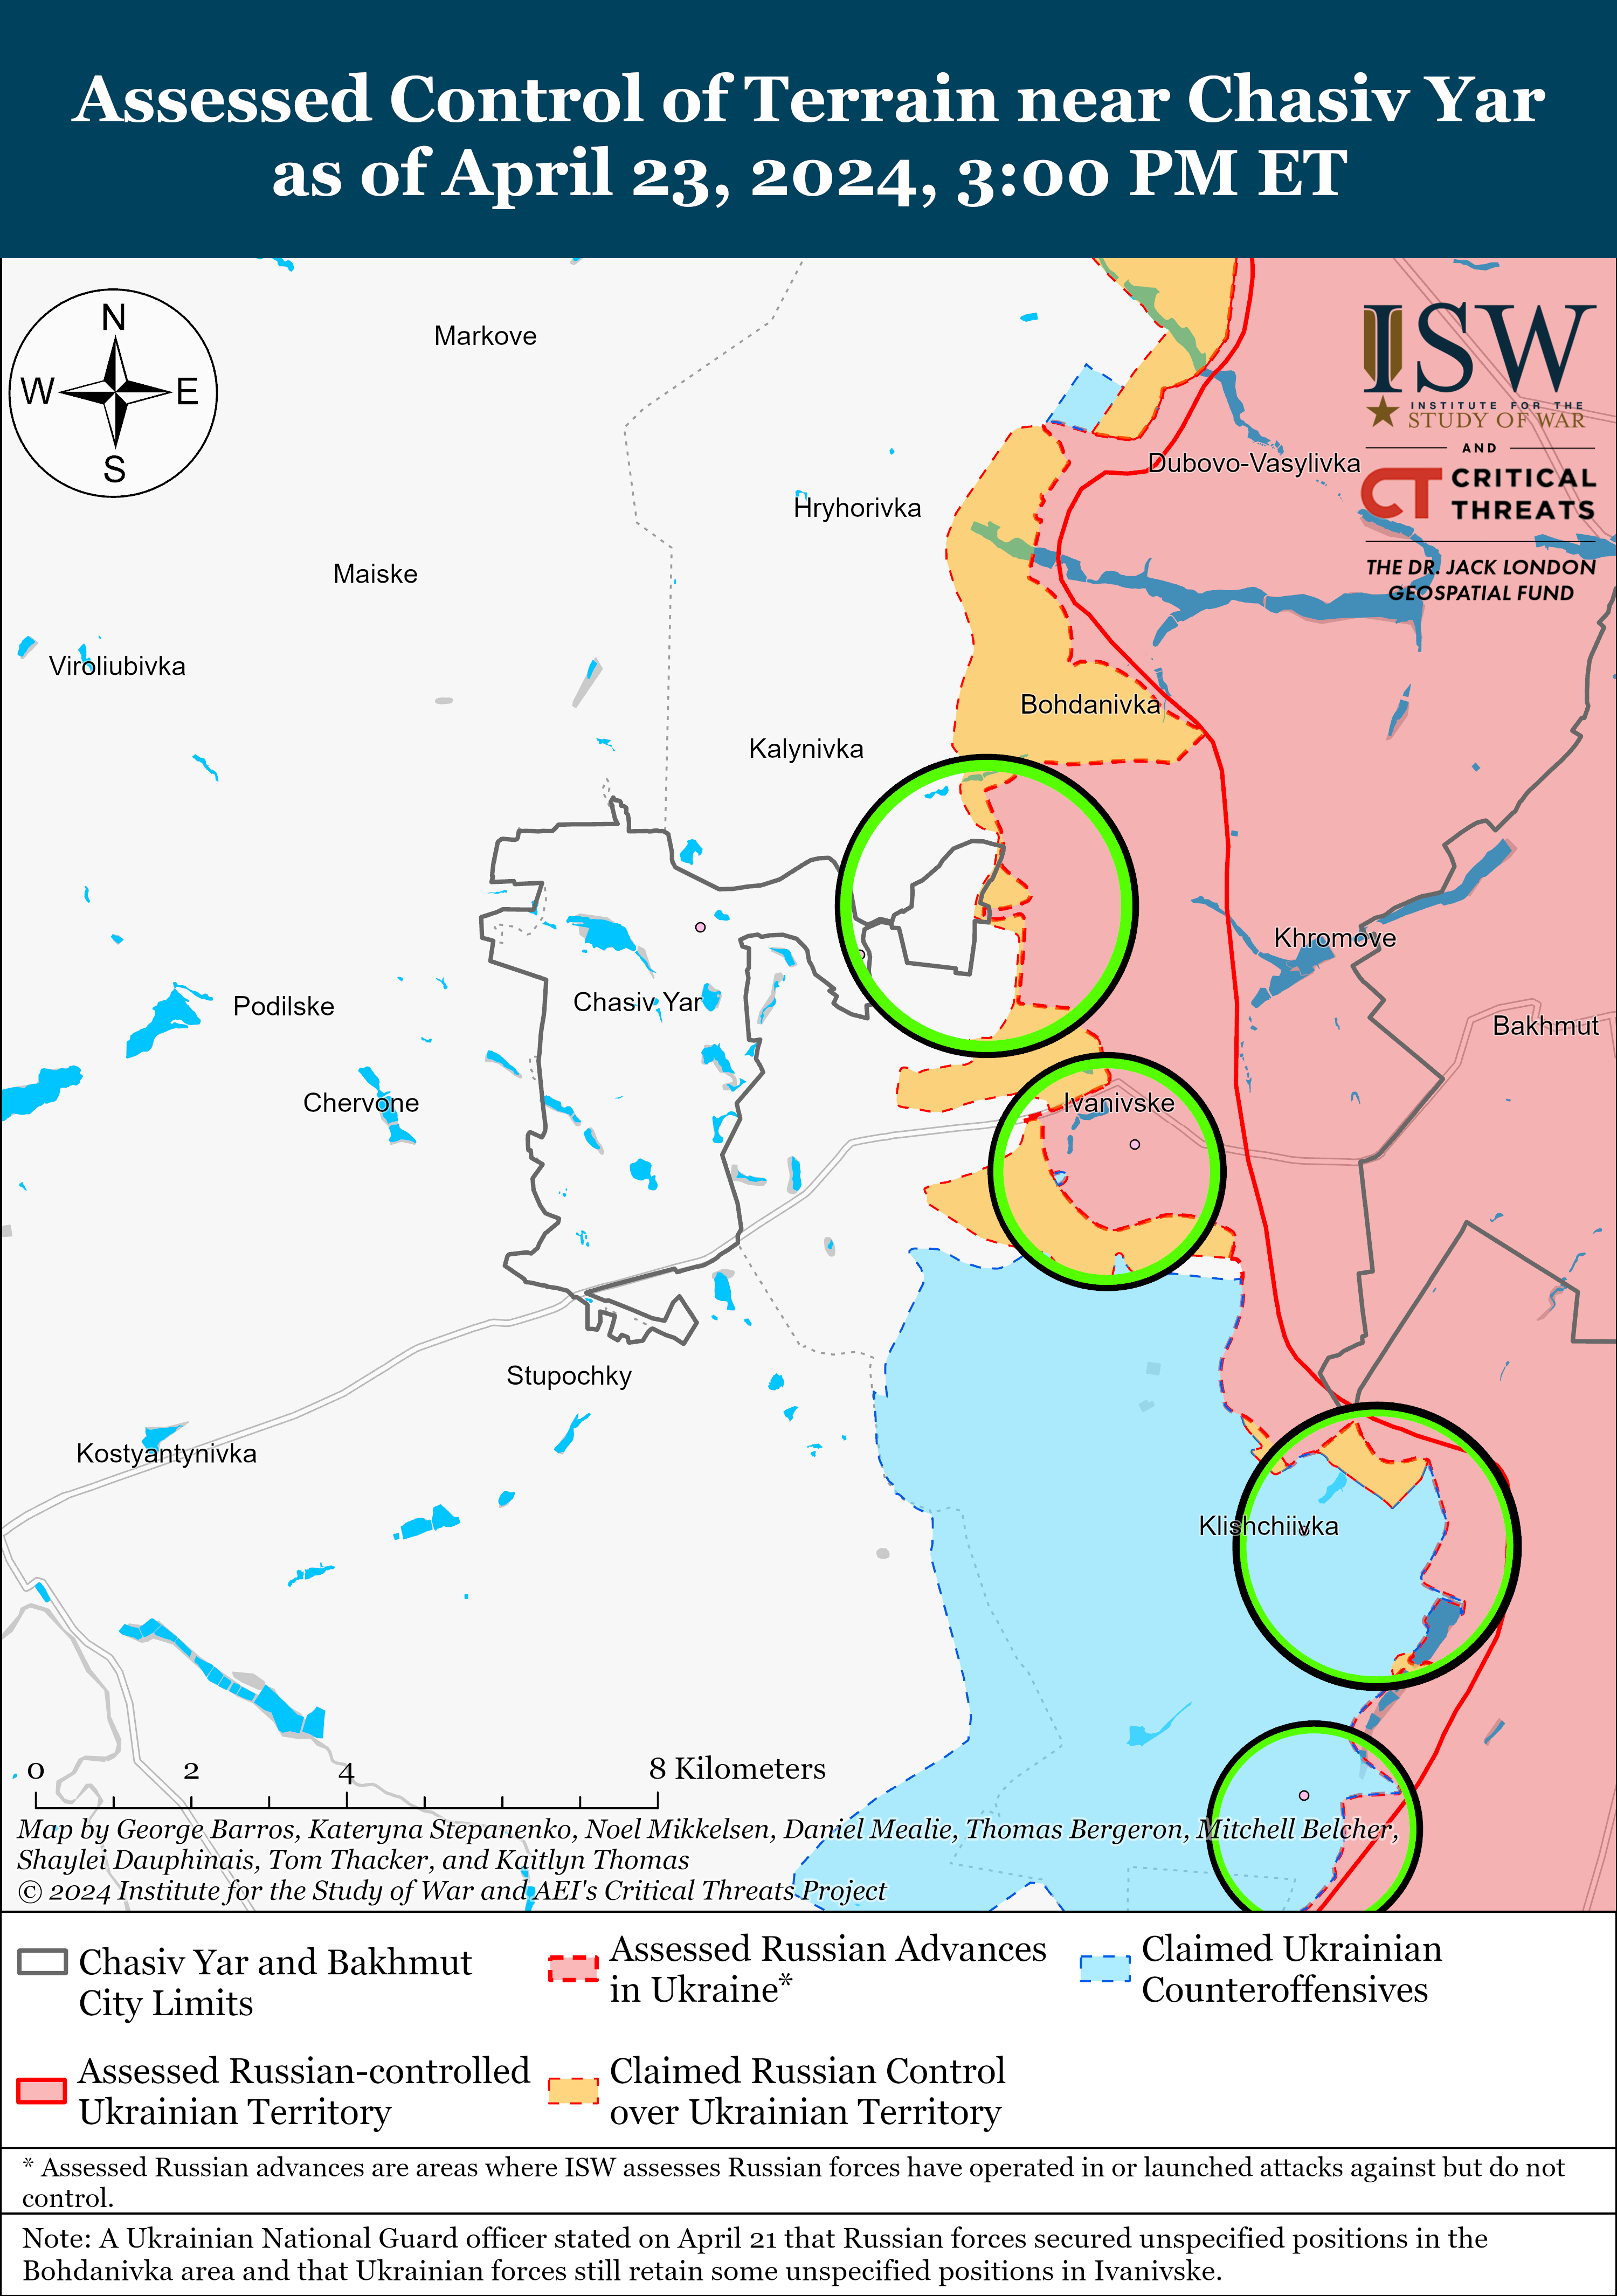 Силы обороны продвинулись возле Часового Яра: карты ISW